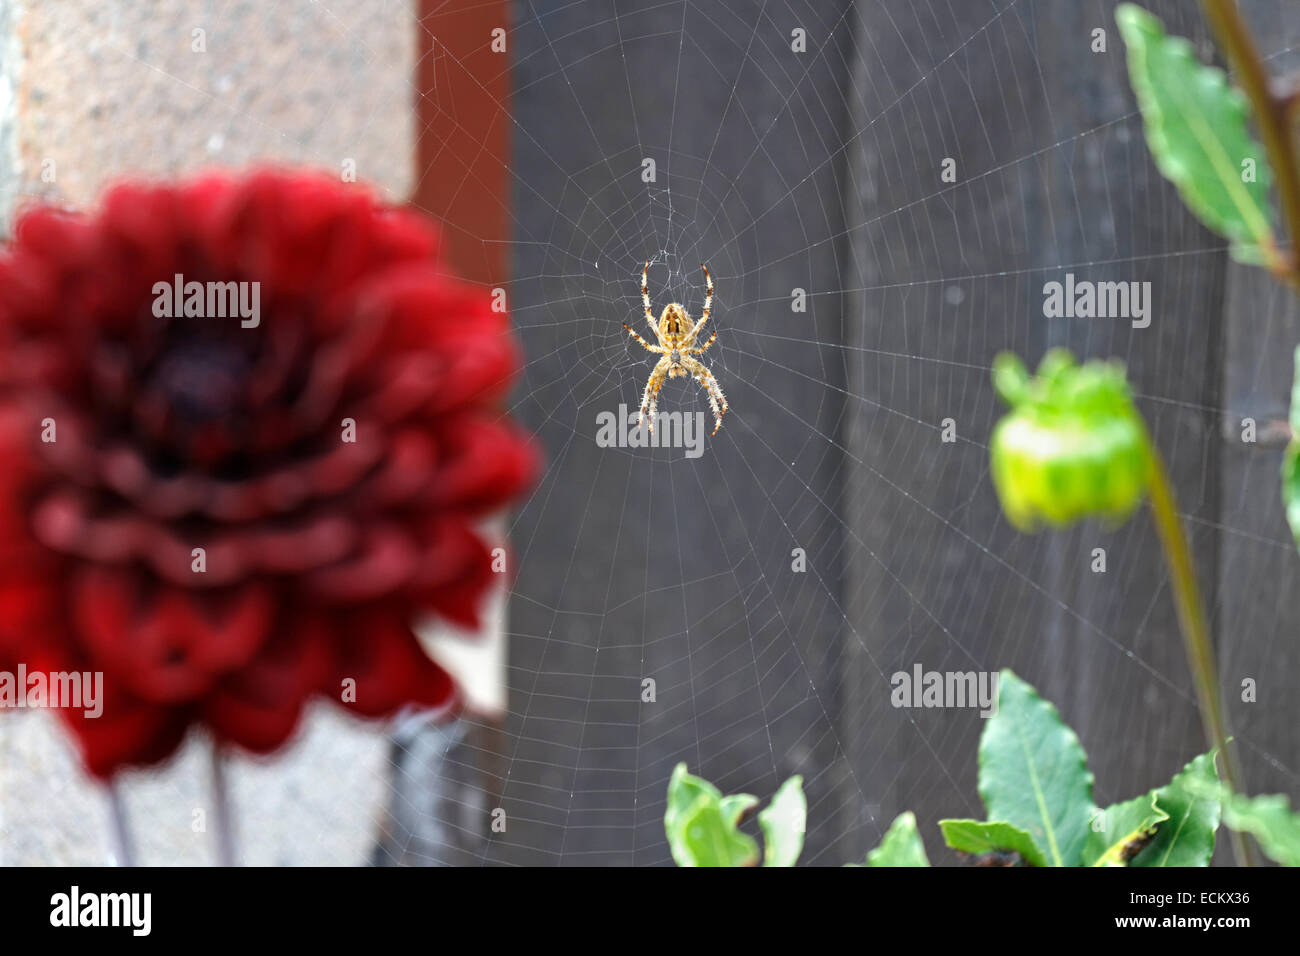 Garden orb spider in garden border of dahlias Stock Photo